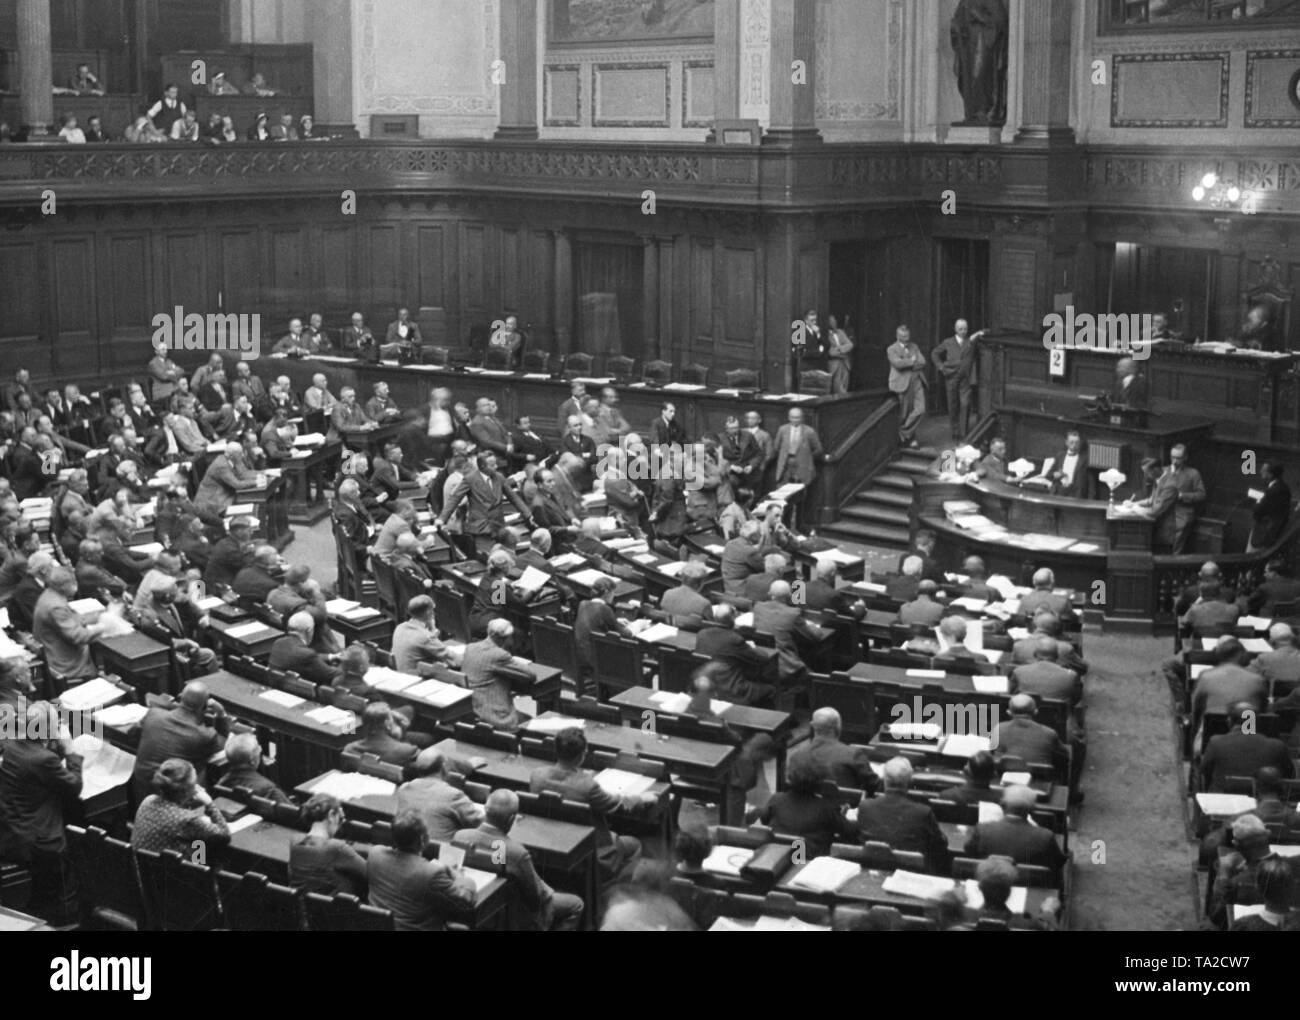 Il presidente del partito NSDAP prussiano gruppo parlamentare Wilhelm Kube tiene un discorso in occasione di una riunione del Landtag Prussiano dopo il rigetto di una richiesta di amnistia. Foto Stock